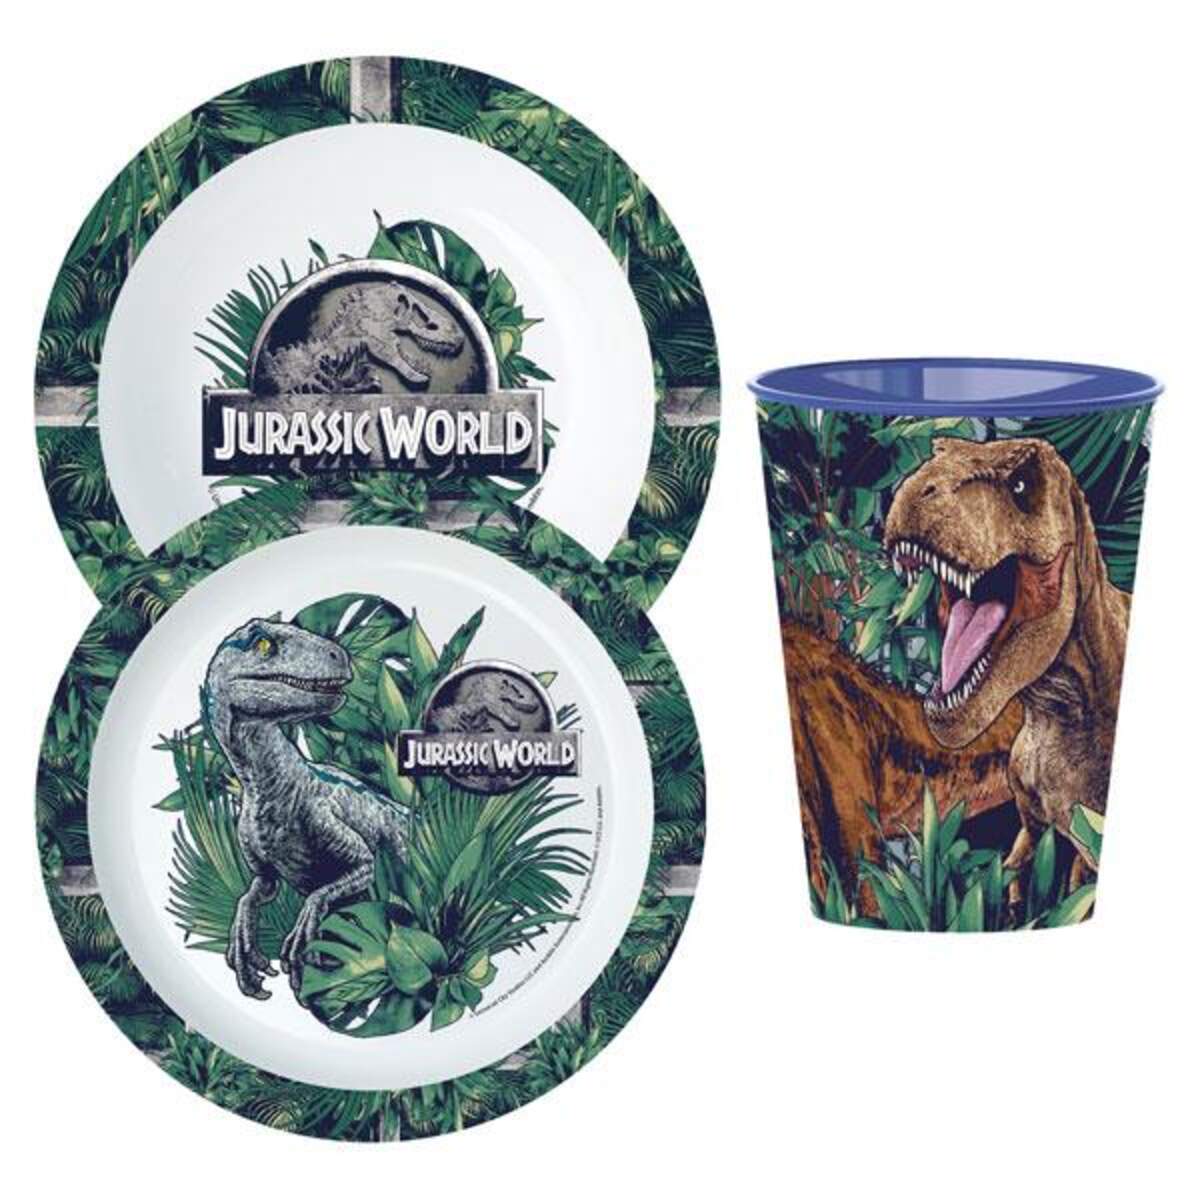 p:os Frühstücks-Set im Jurassic World-Design, 3-teilig